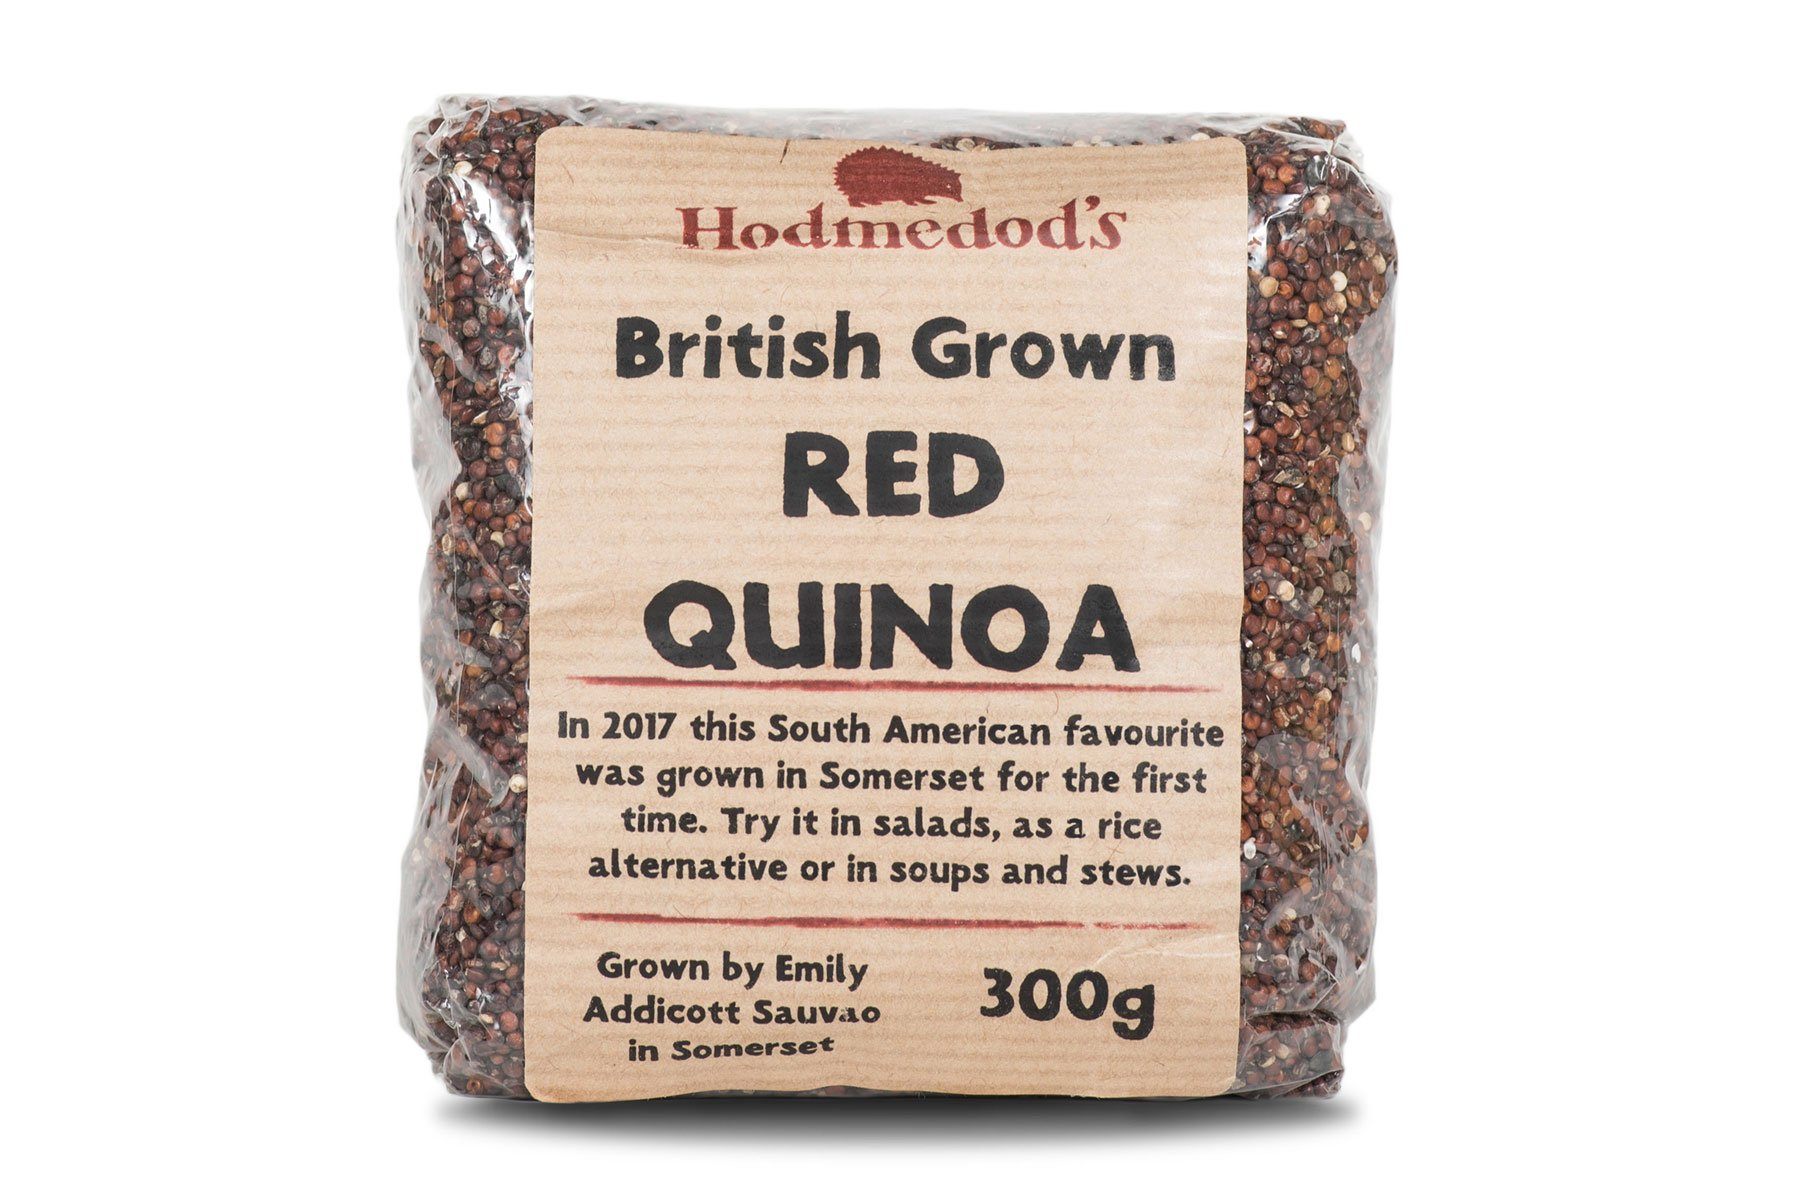 British Red Quinoa - Hodmedod's British Pulses & Grains